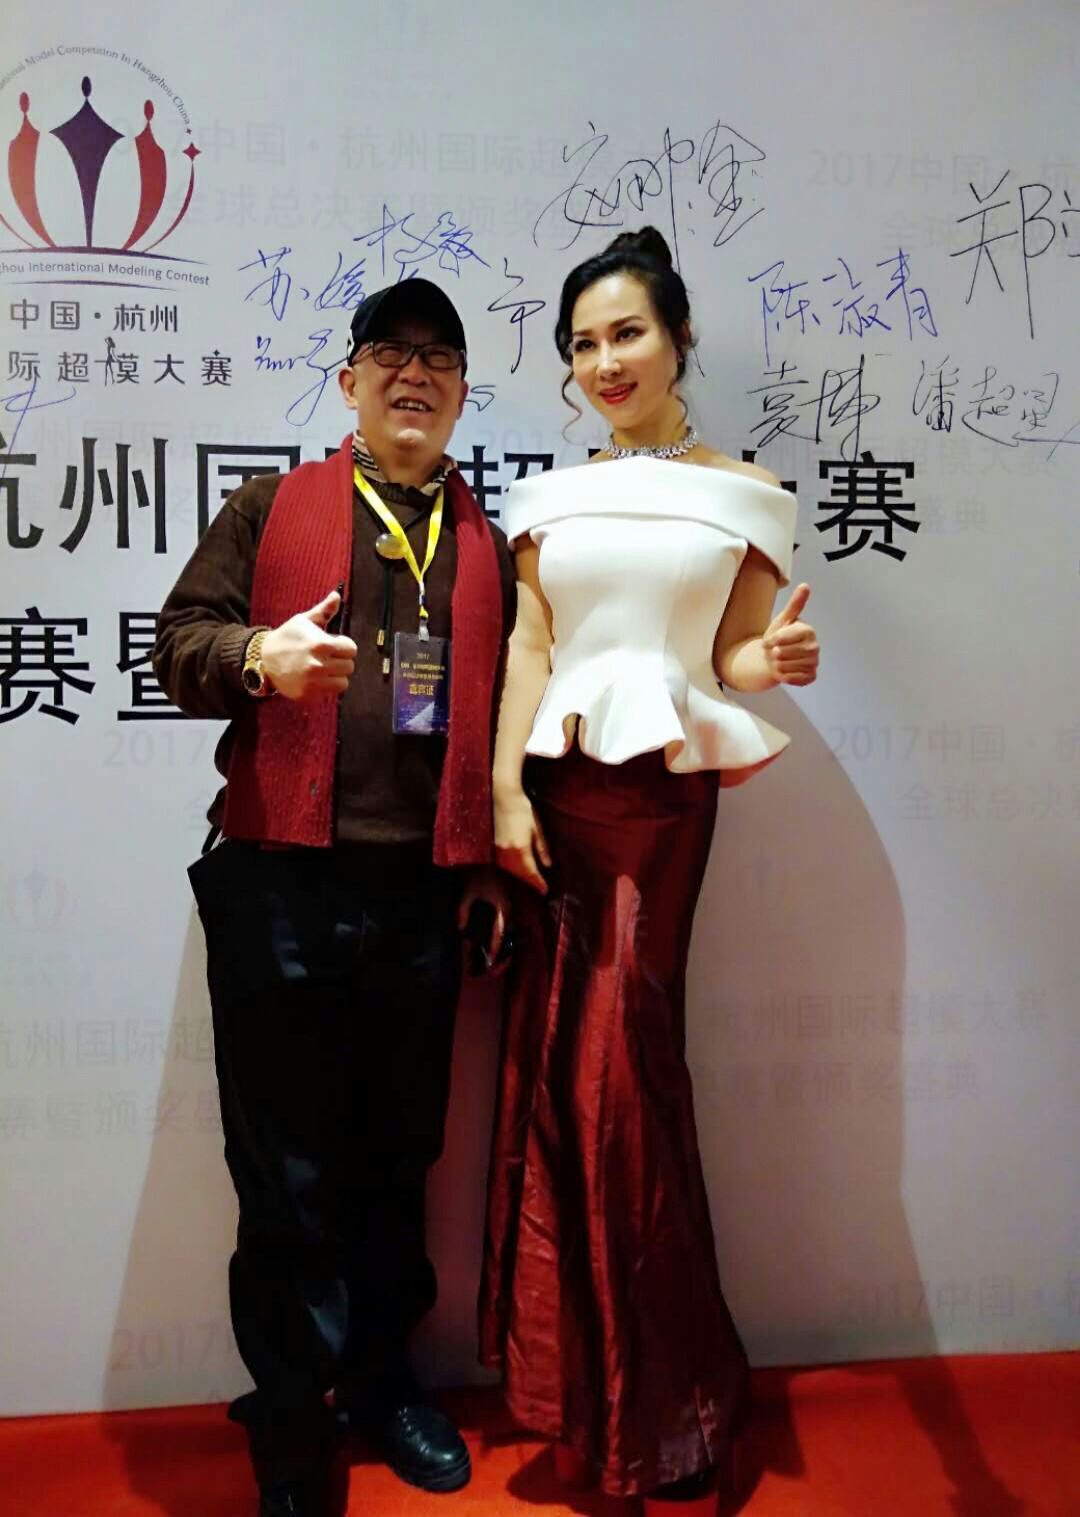 侯耀华女徒弟混血演员安娜金拍摄优雅旗袍写真